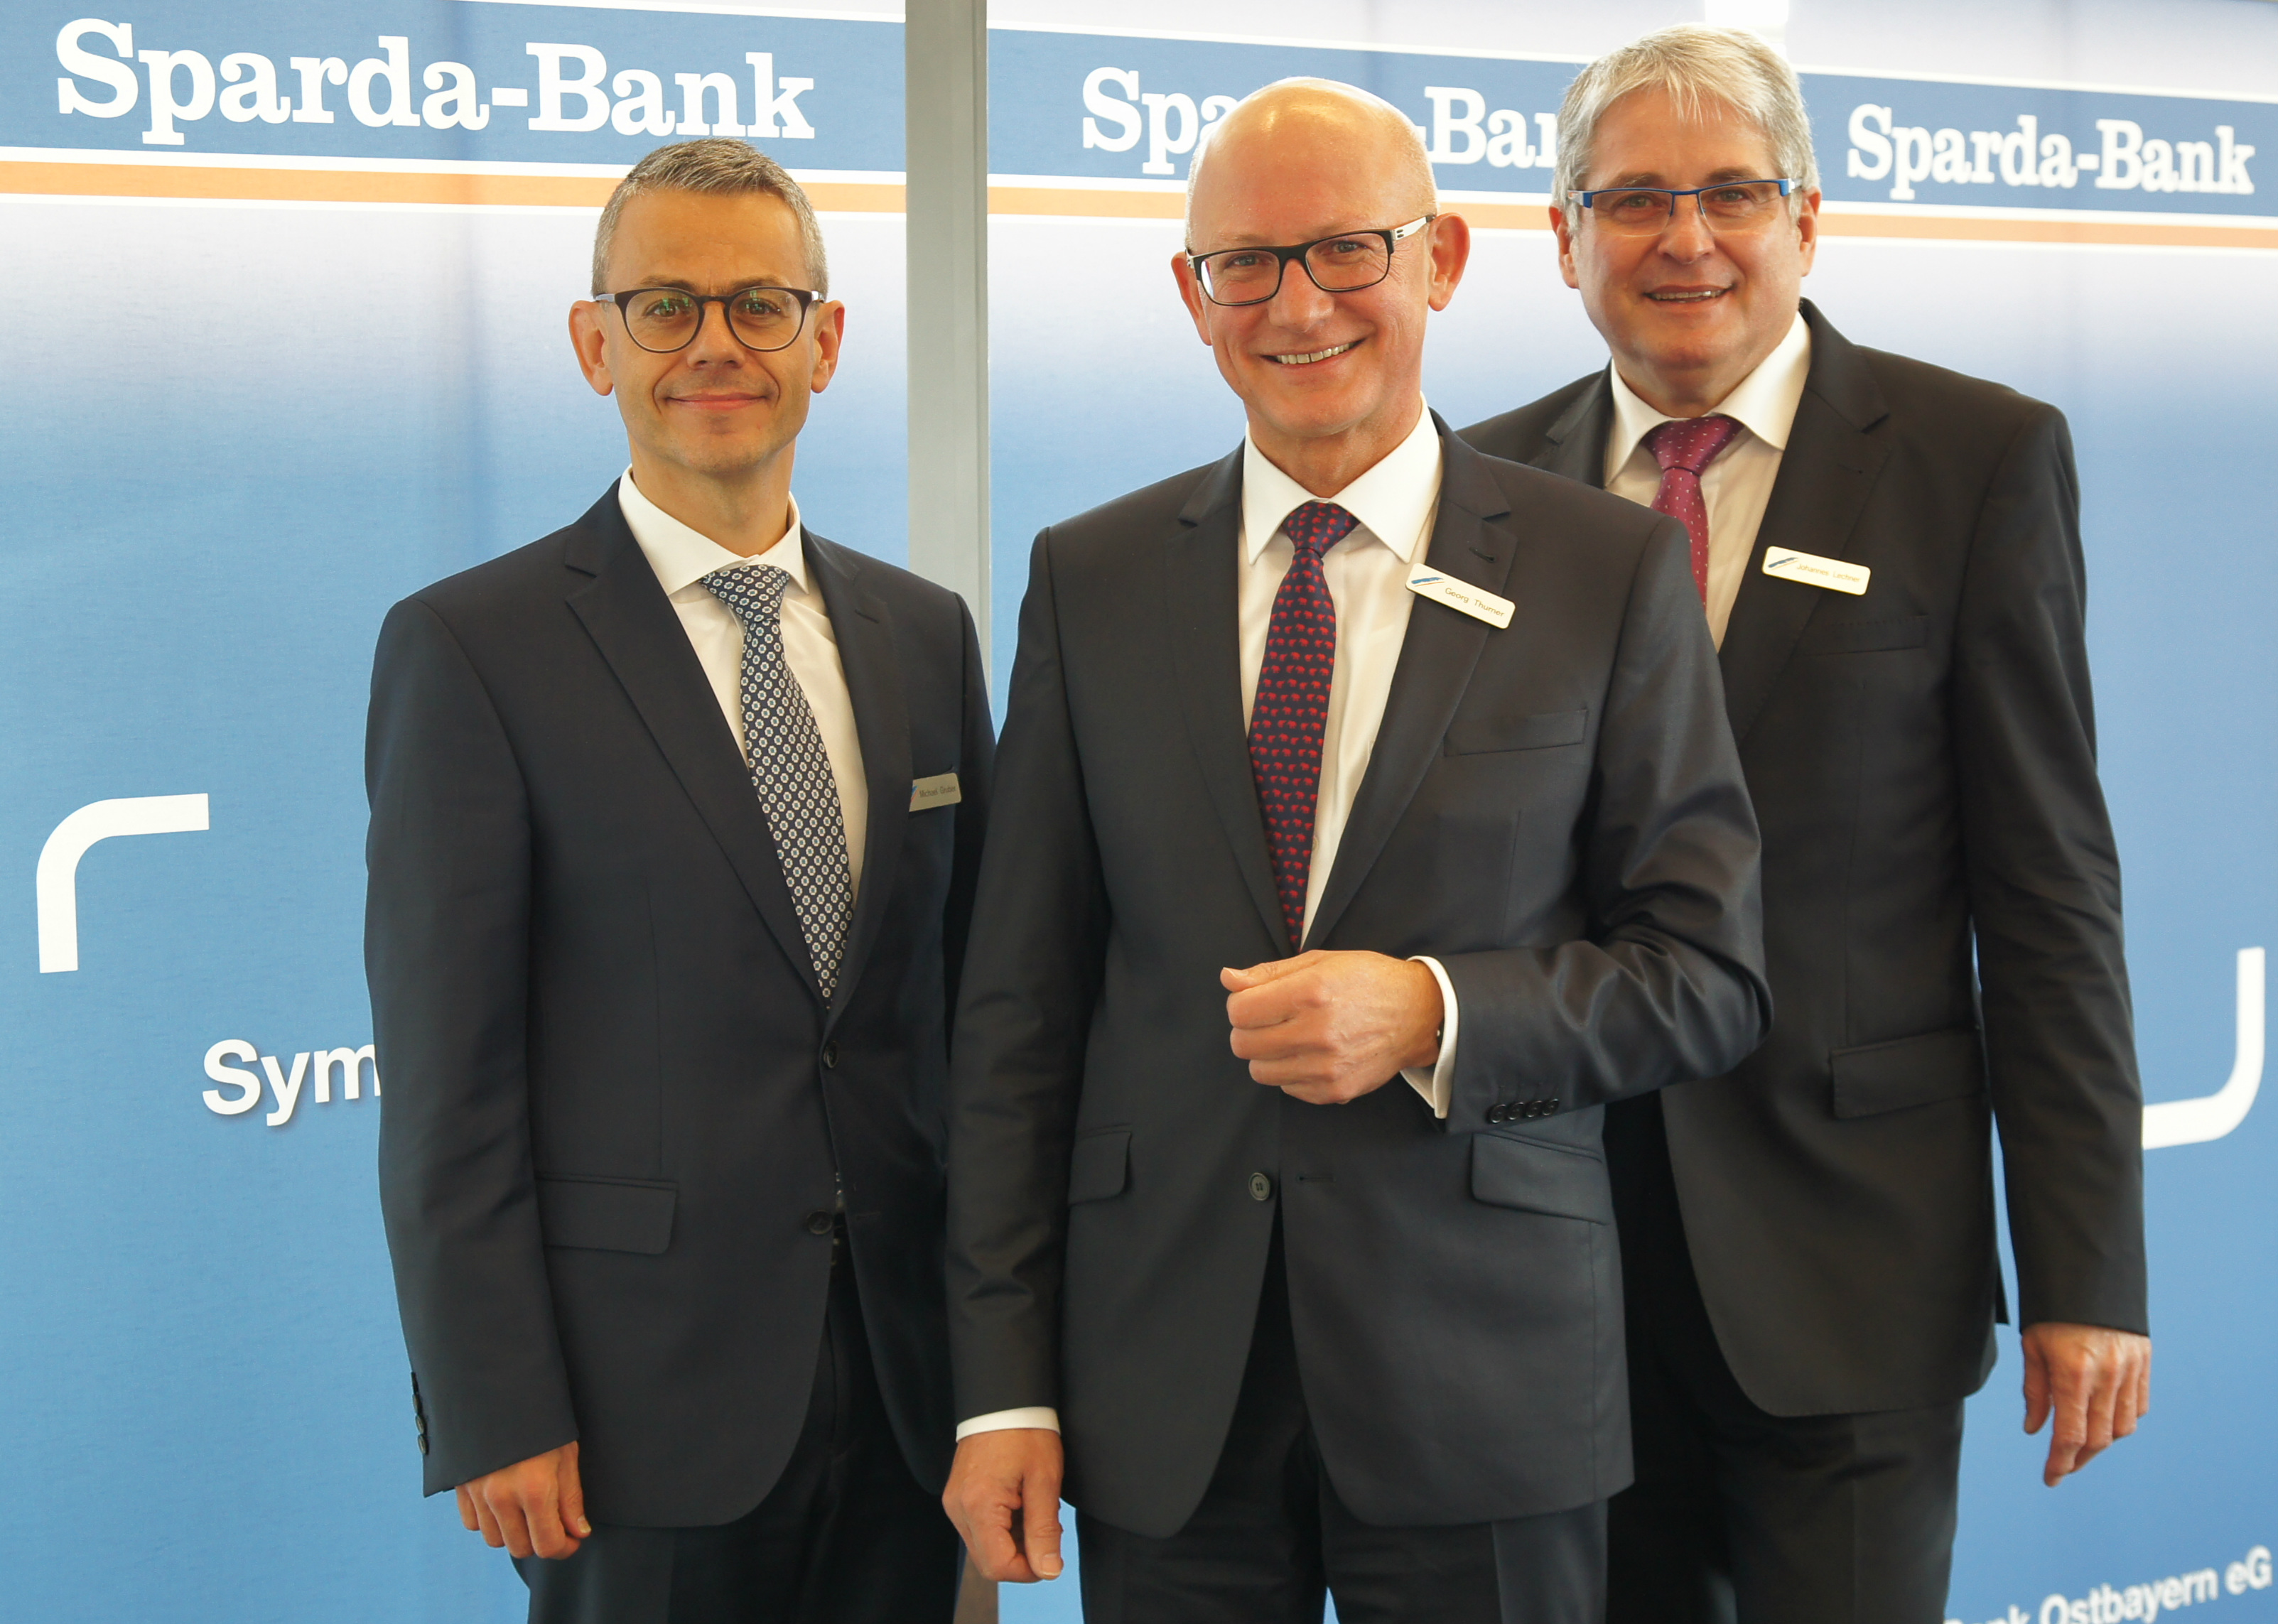 Die Vorstände der Sparda-Bank Ostbayern eG bei der Bilanz-Pressekonferenz 2018